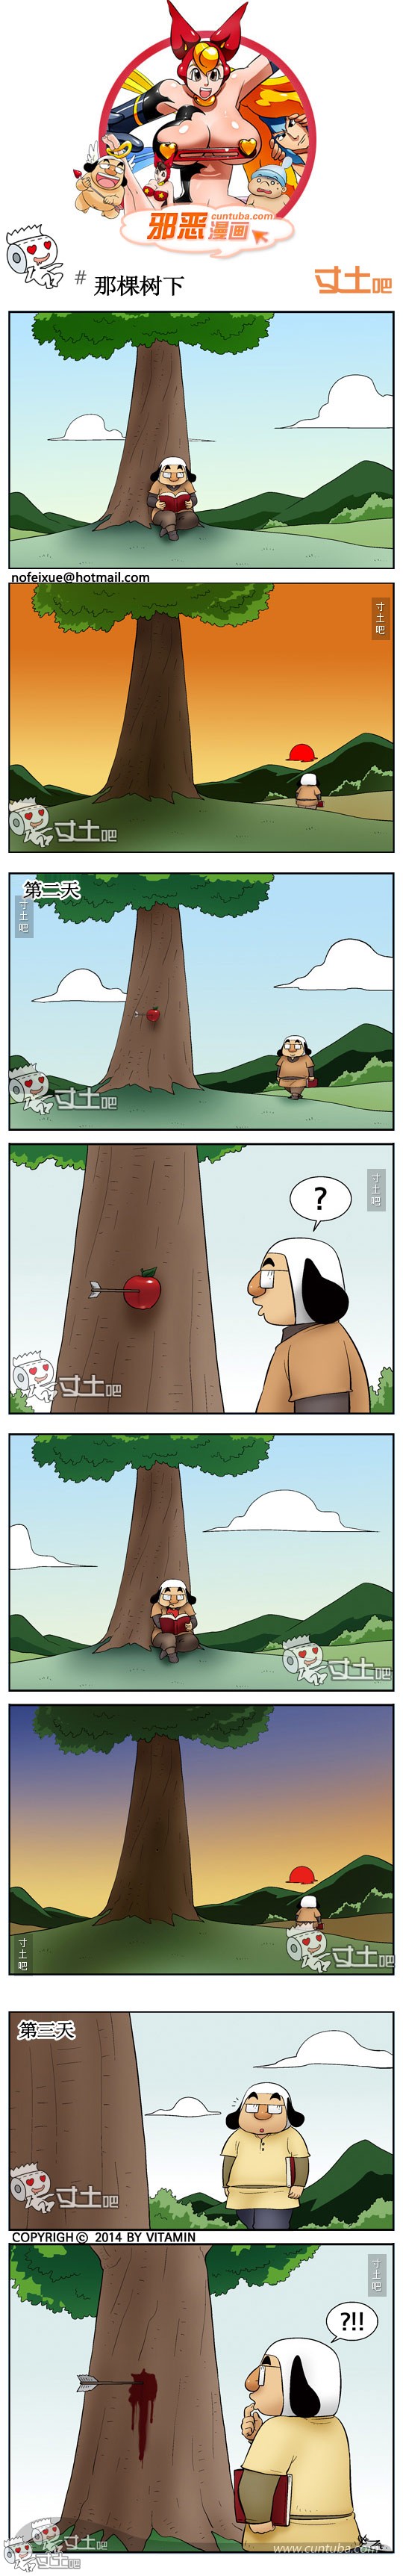 邪恶漫画那棵树下